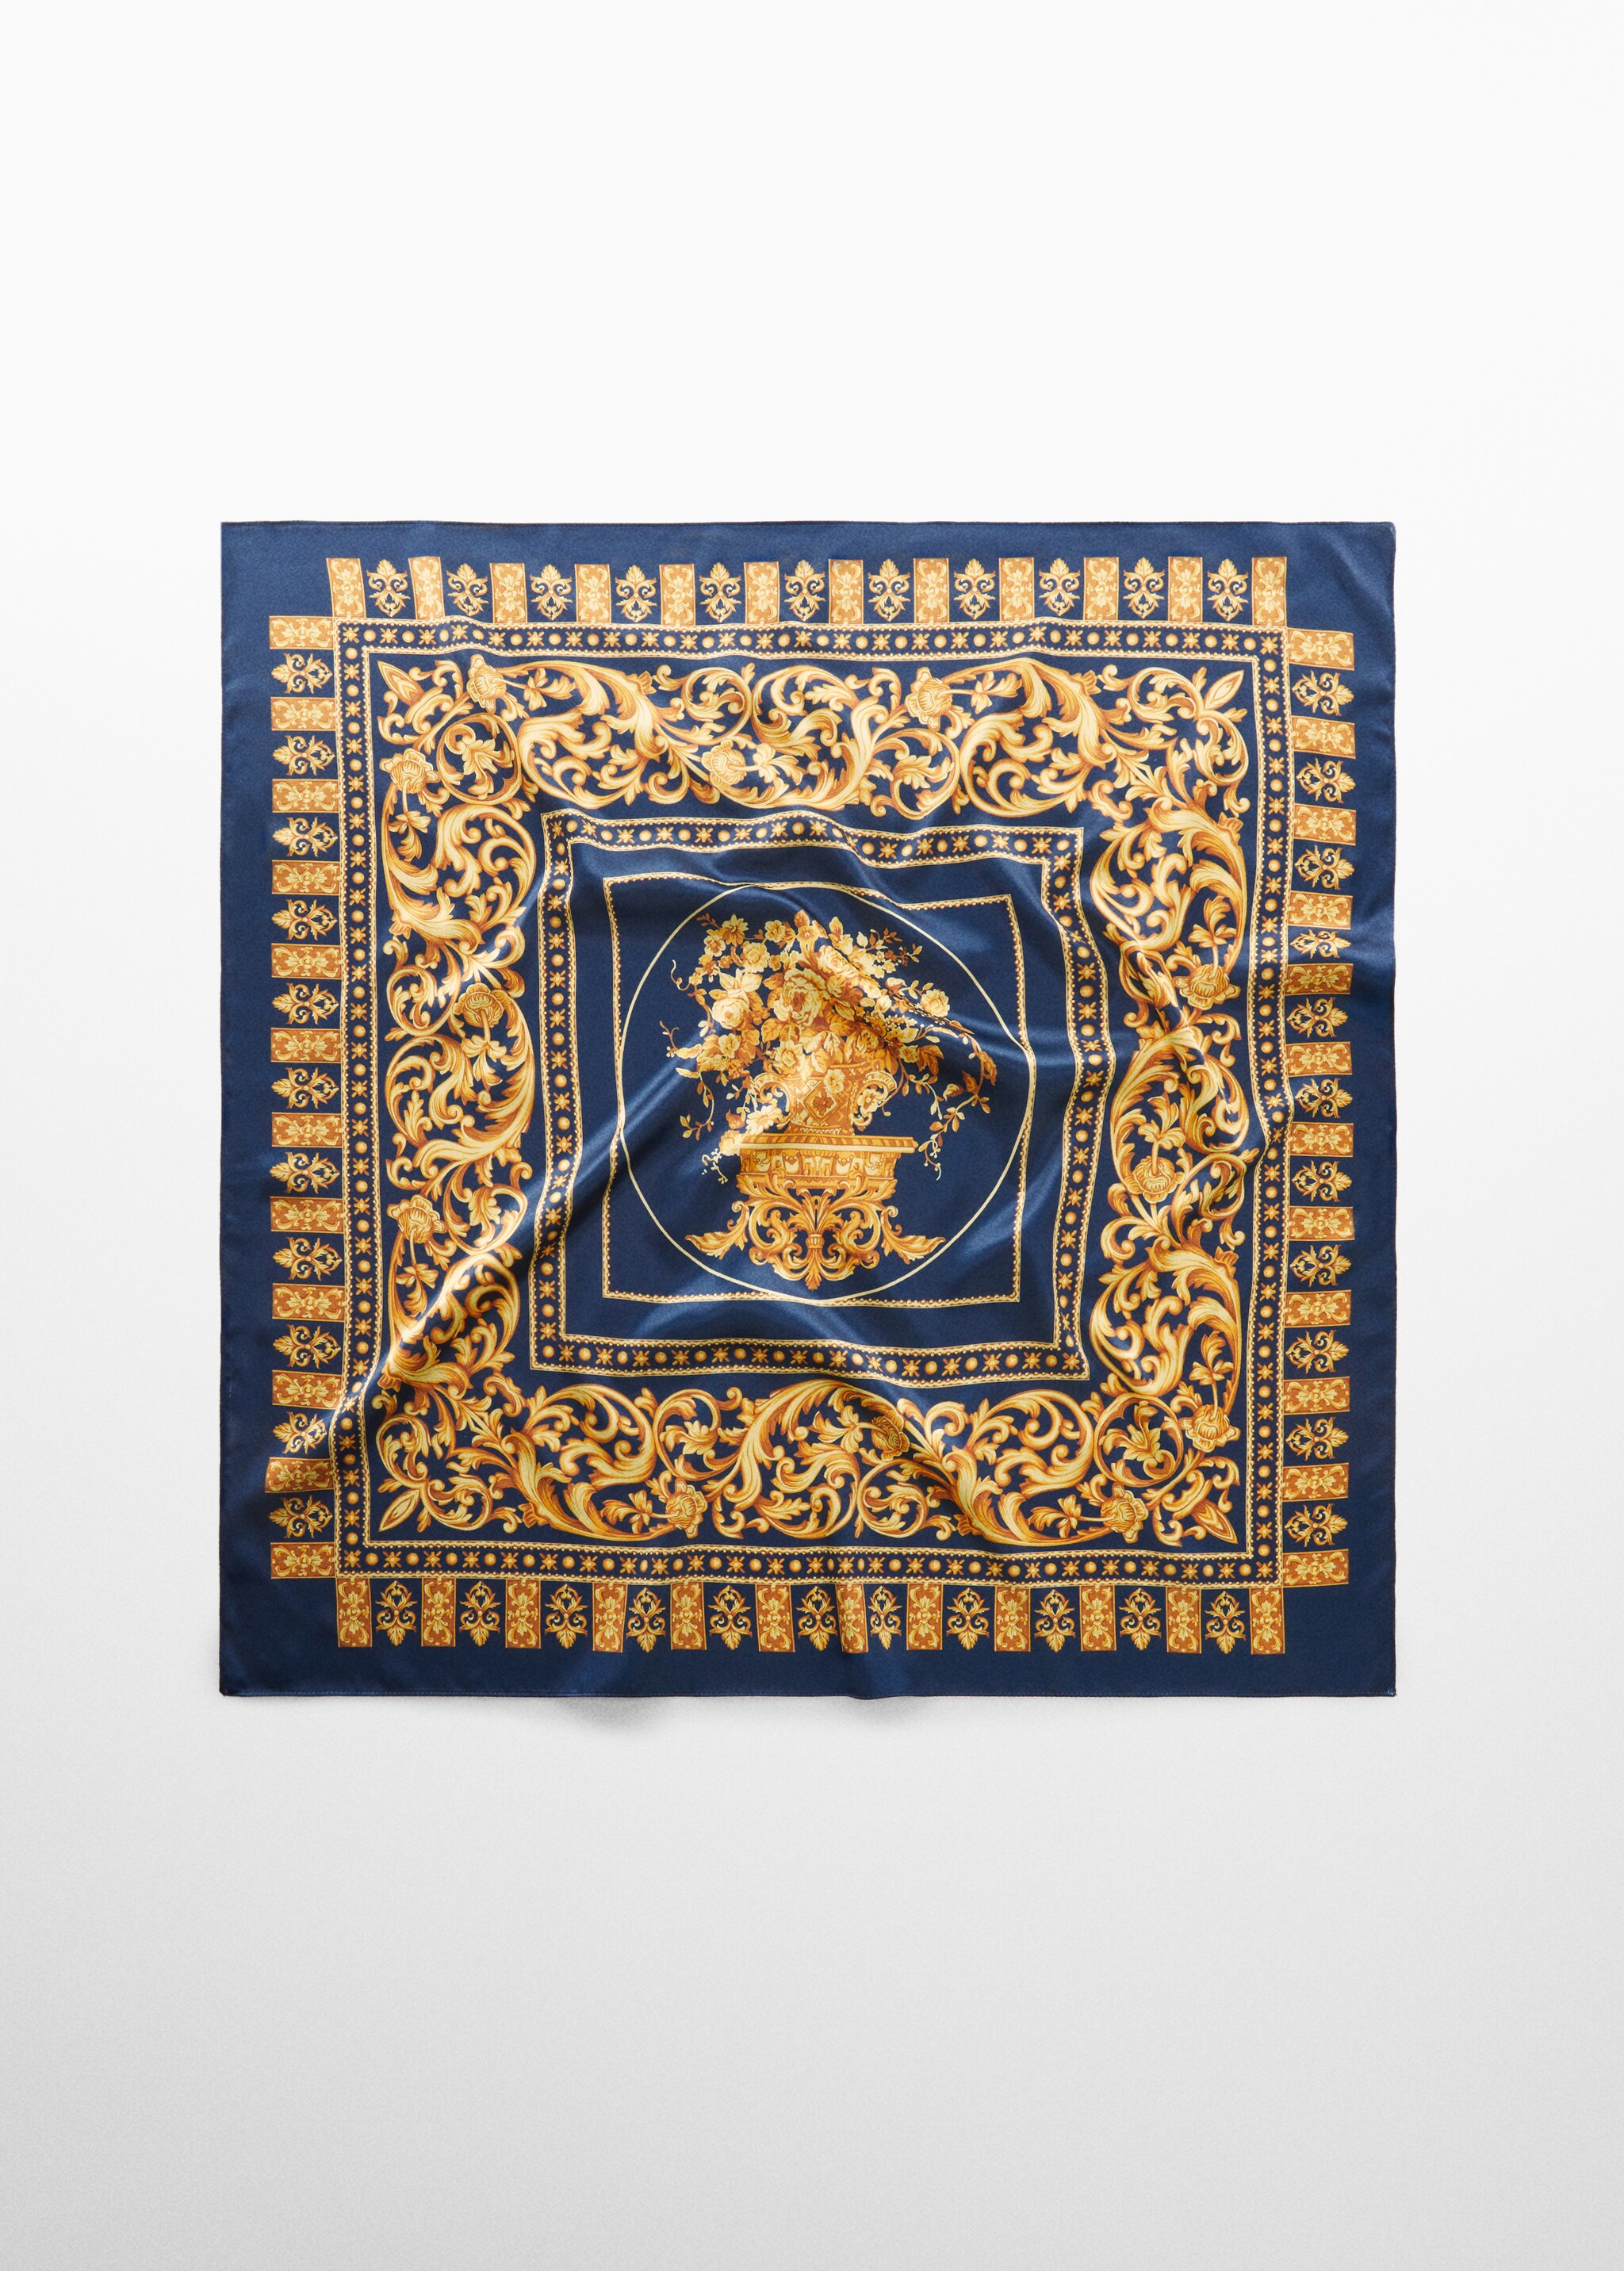 Pañuelo estampado barroco - Artículo sin modelo